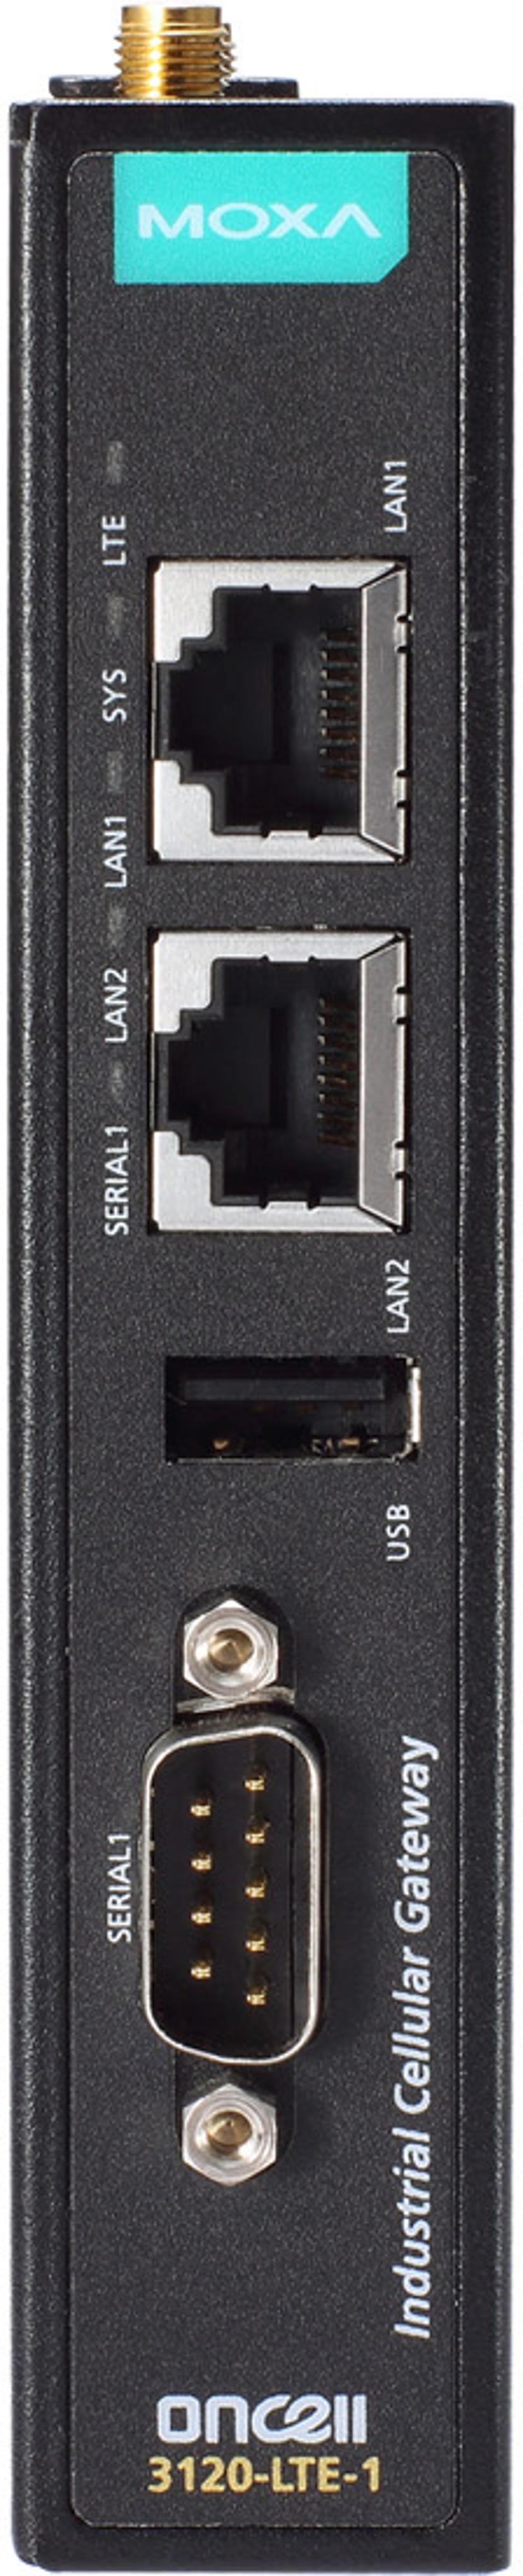 Moxa OnCell 3120-LTE-1, teollinen LTE-yhdyskäytävä